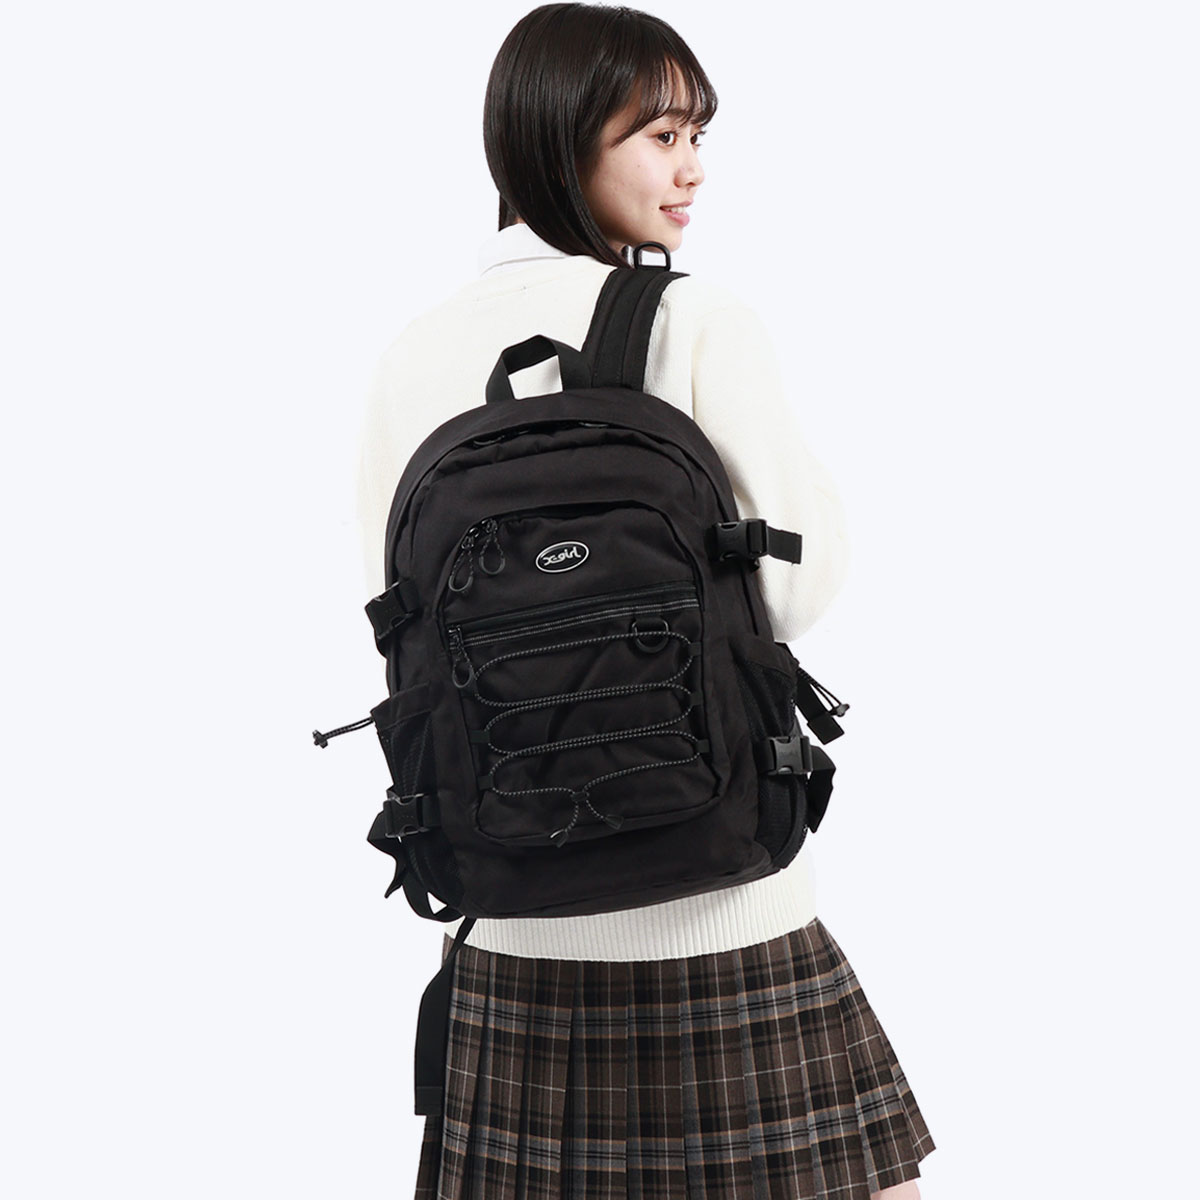  X-girl рюкзак женский женщина ходить на работу посещение школы X-girl рюкзак легкий легкий модный путешествие карман много большой студент 105234053005